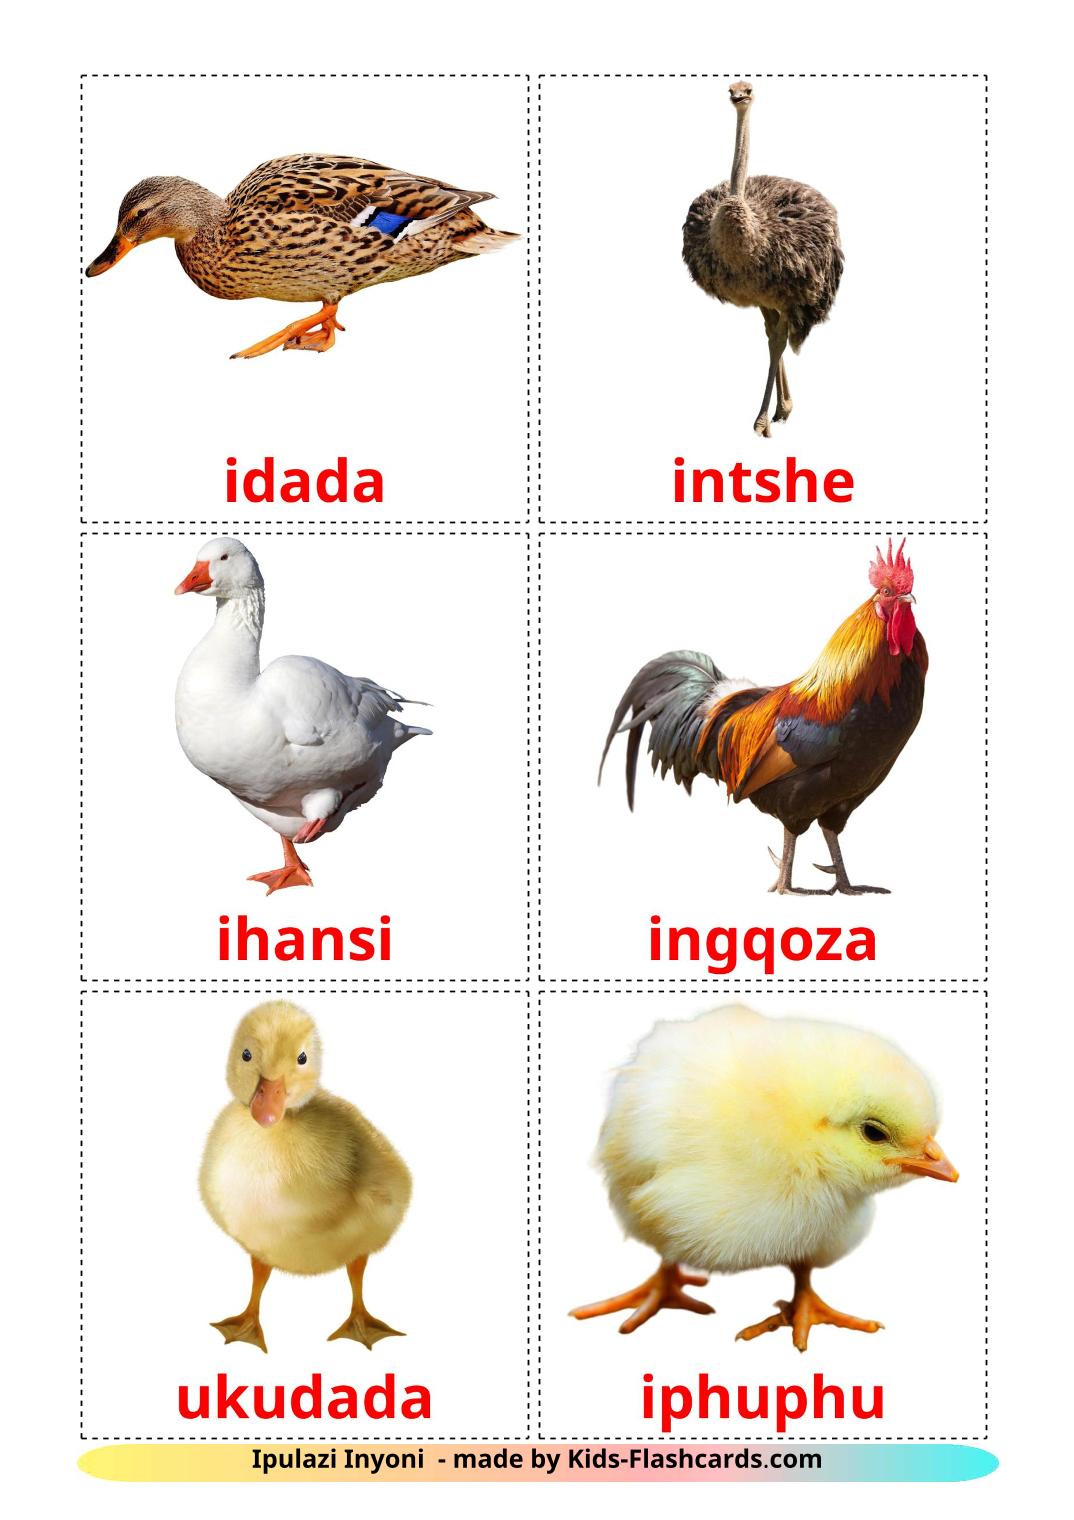 Aves de granja - 11 fichas de zulú para imprimir gratis 